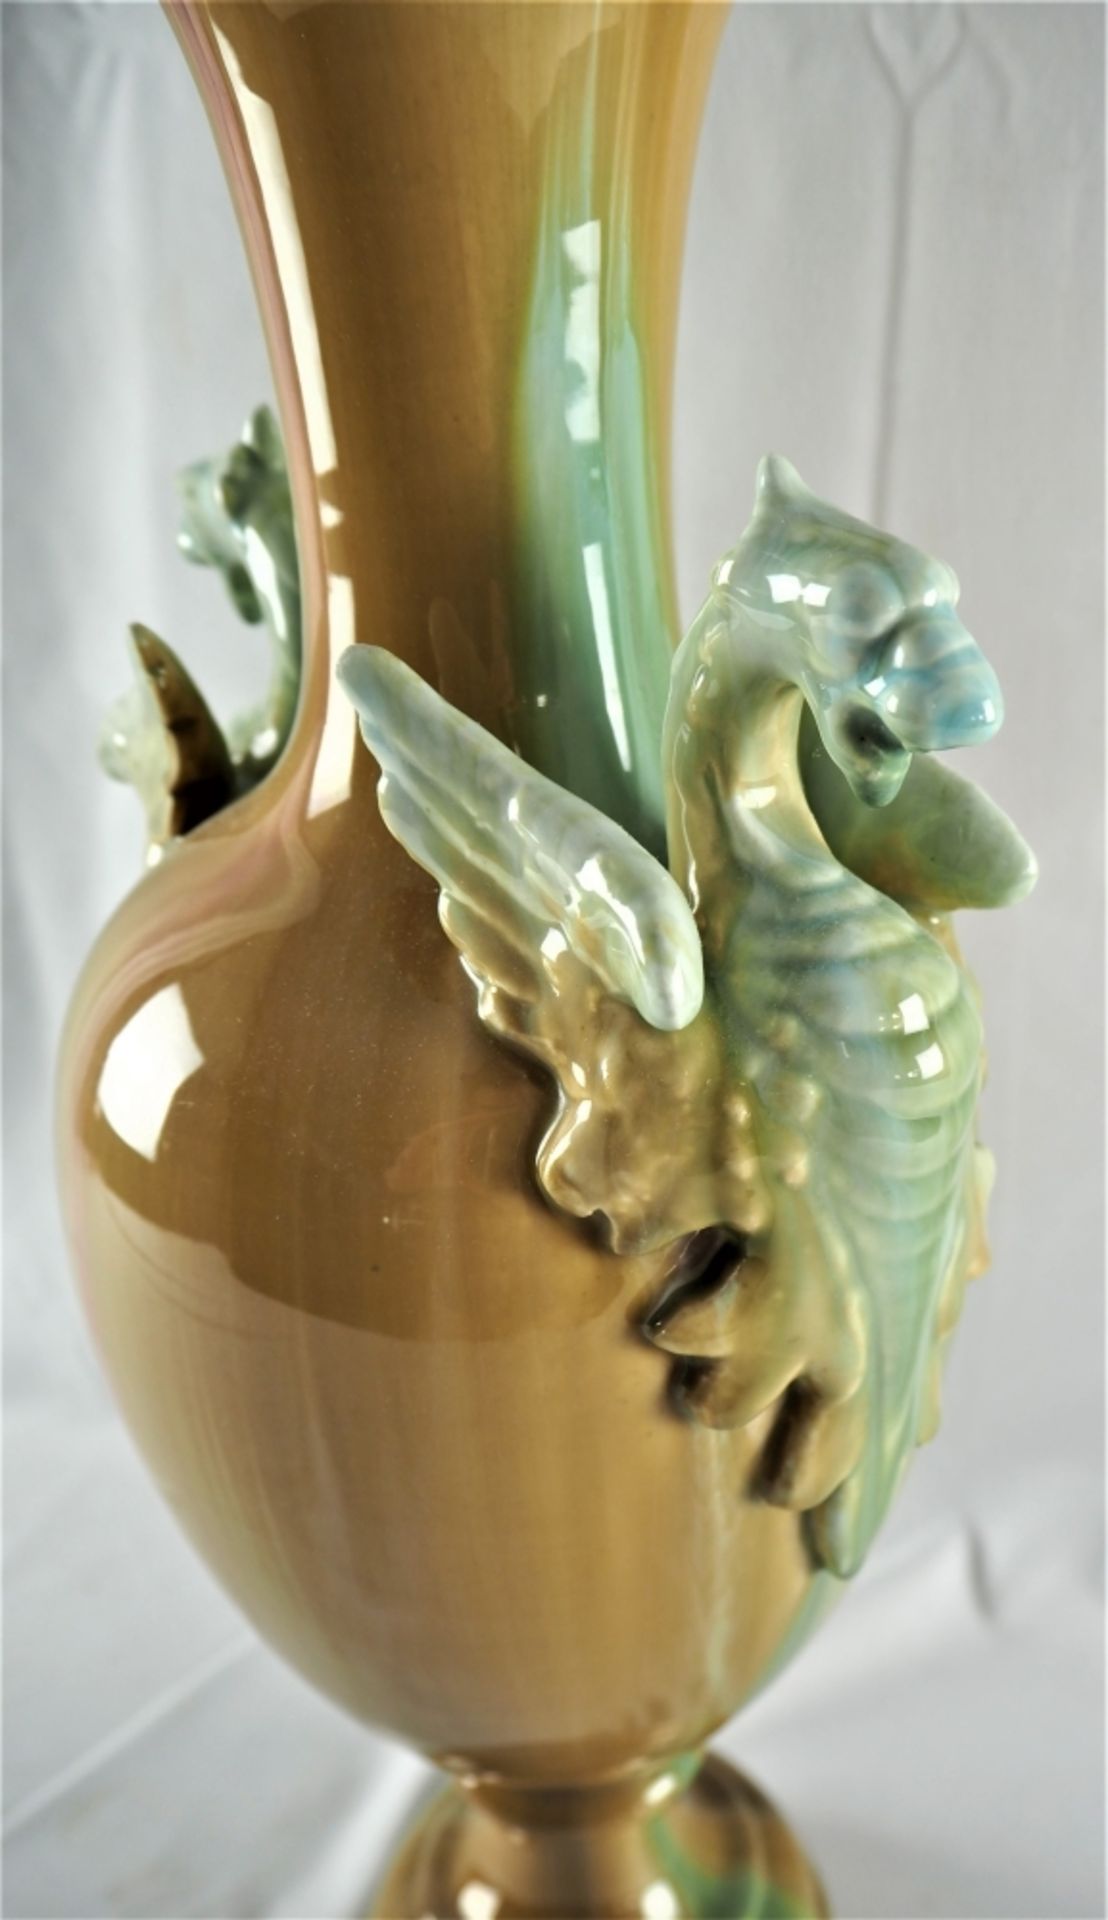 Große Vase 30er JahreKeramik, farbig glasiert, Cuppa-förmig mit gewelltem Hals, Handhabe - Image 3 of 3